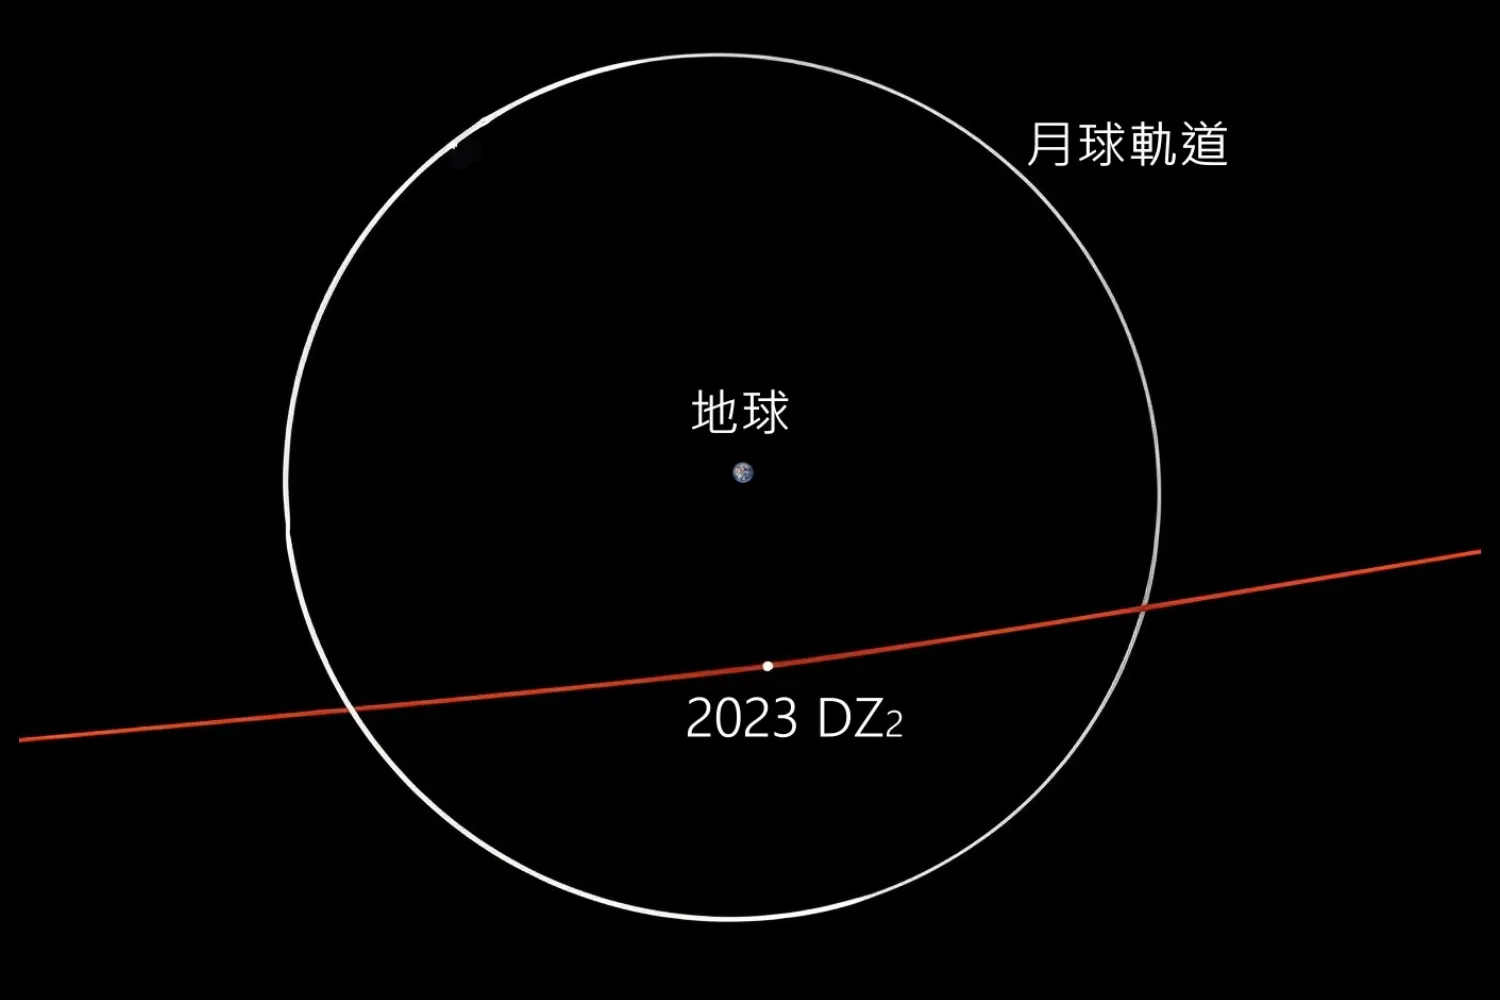 小行星2023 DZ2